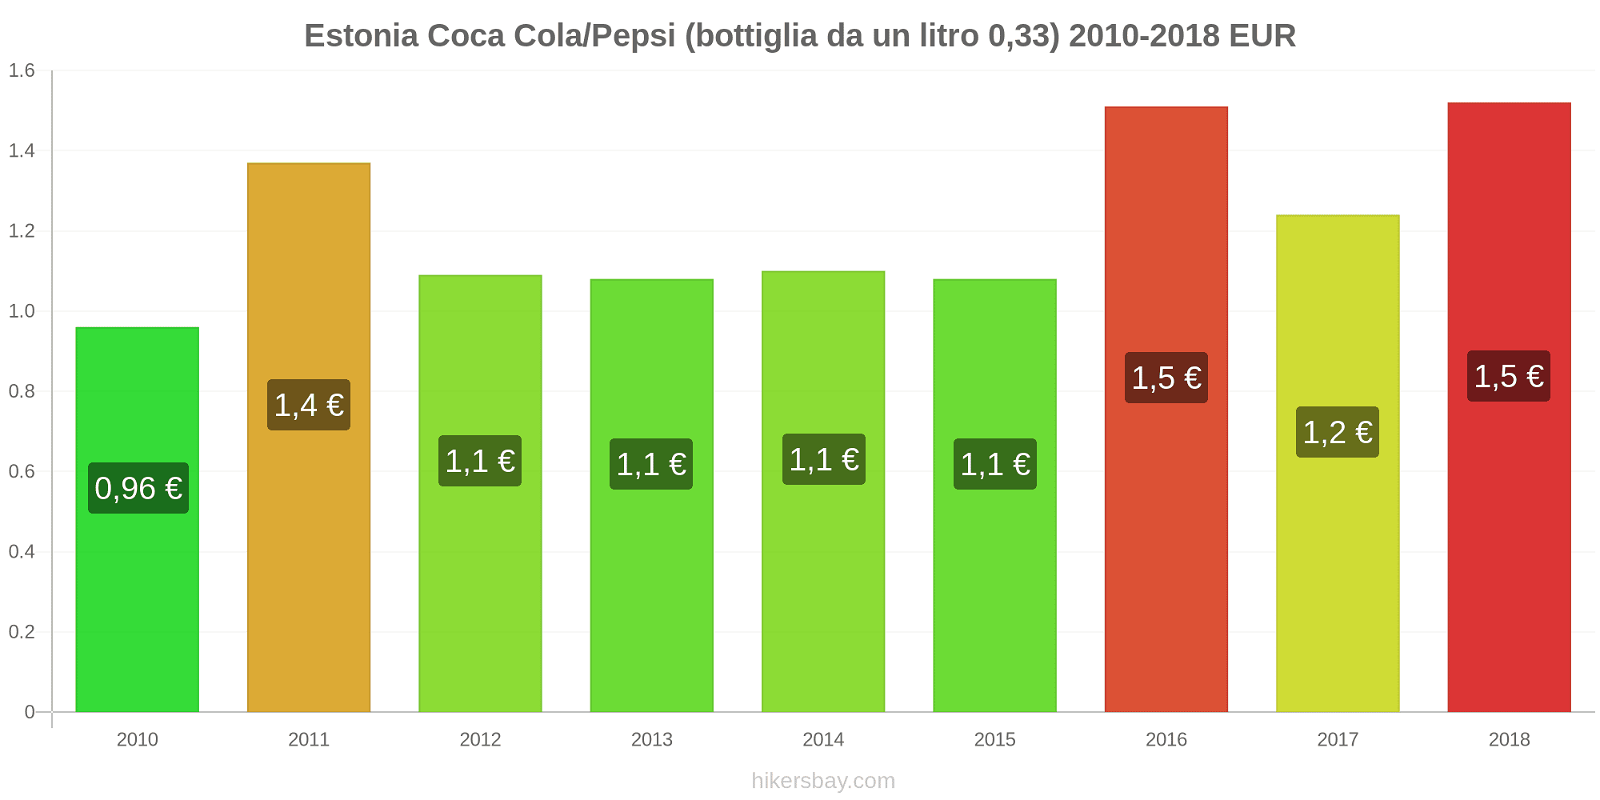 Estonia cambi di prezzo Coca-Cola/Pepsi (bottiglia da 0.33 litri) hikersbay.com